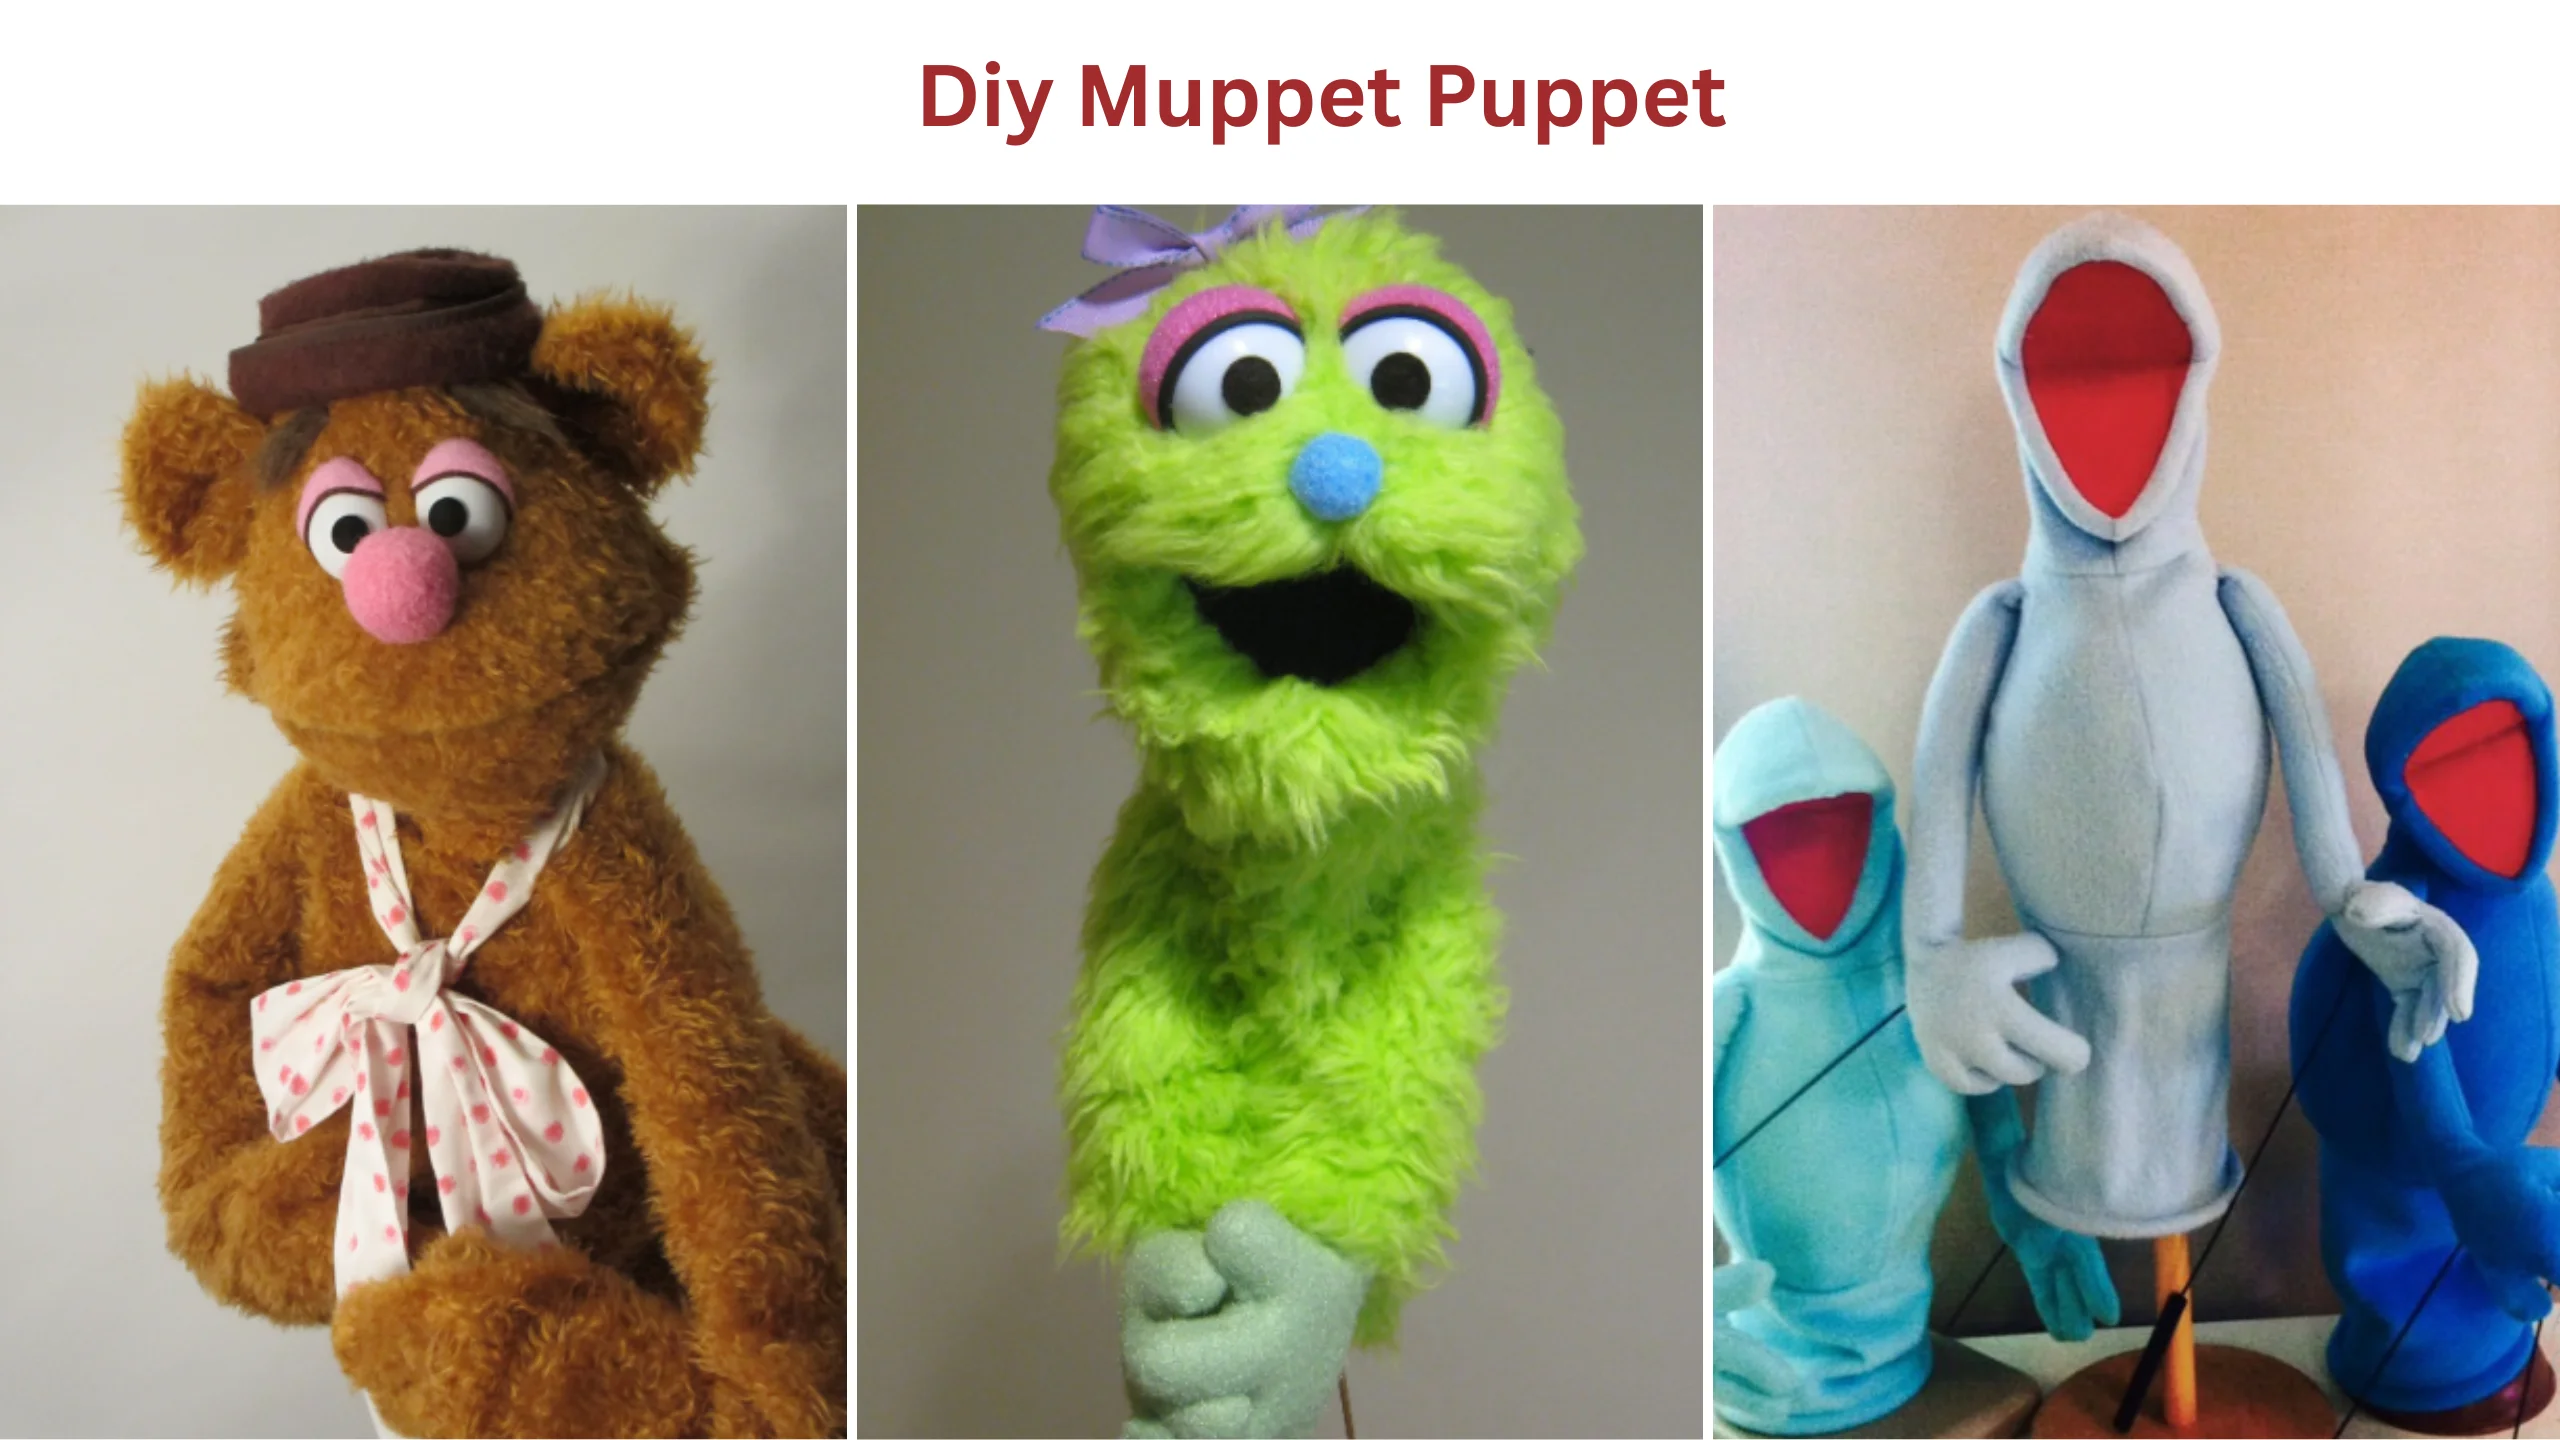 Diy muppet puppet